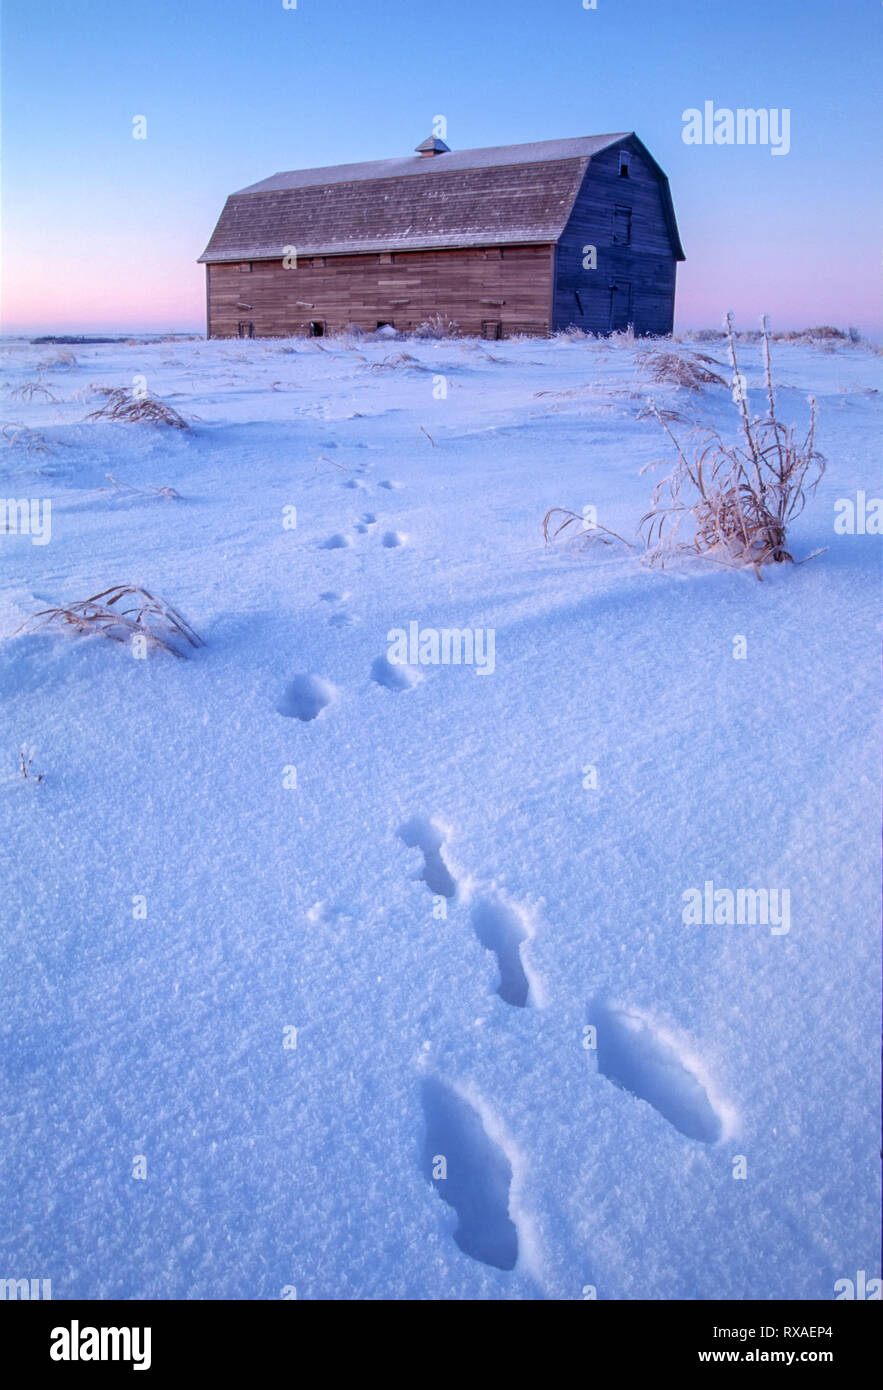 Barn and rabbit tracks in snow, near Saskatoon, Saskatchewan, Canada Stock Photo